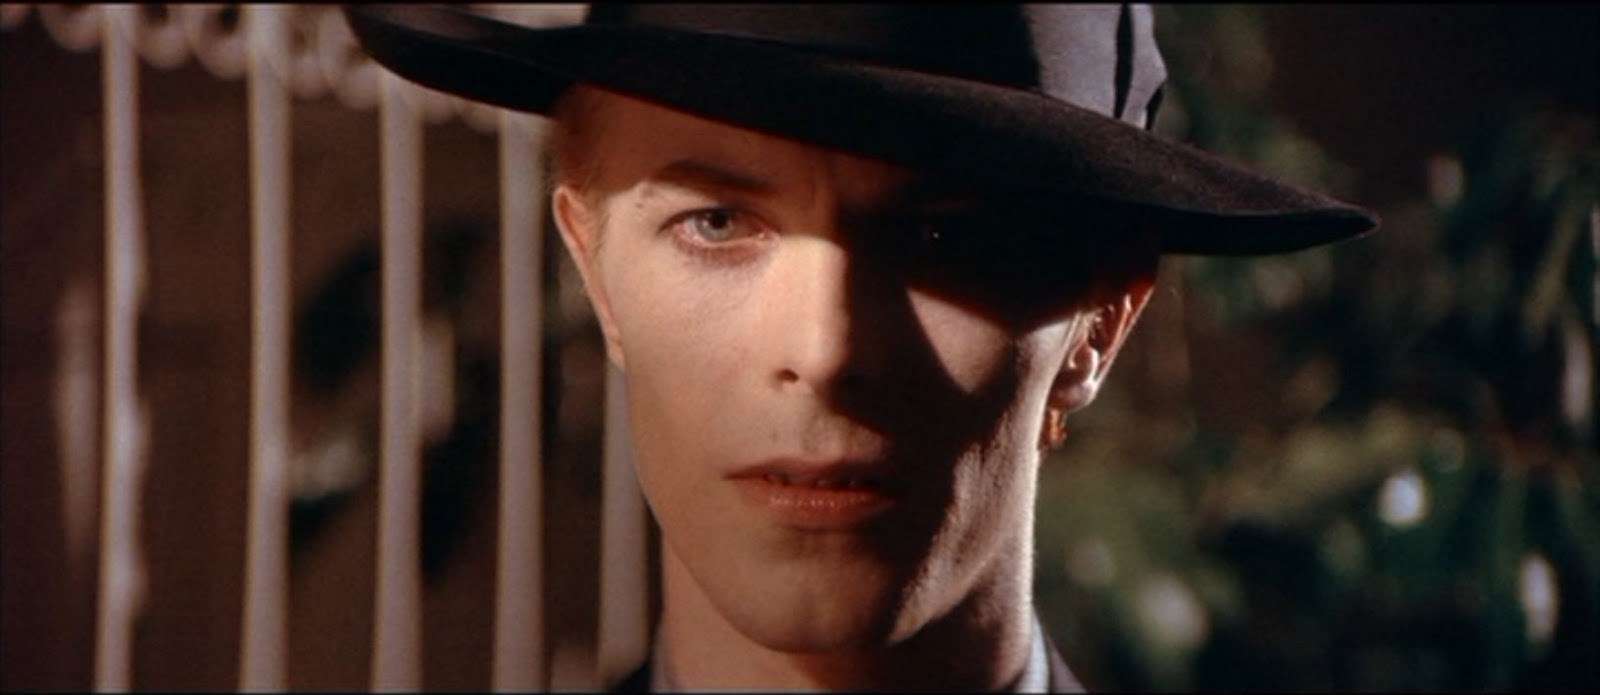 Cinema: Belas Artes exibe clássico com David Bowie nesta quinta 